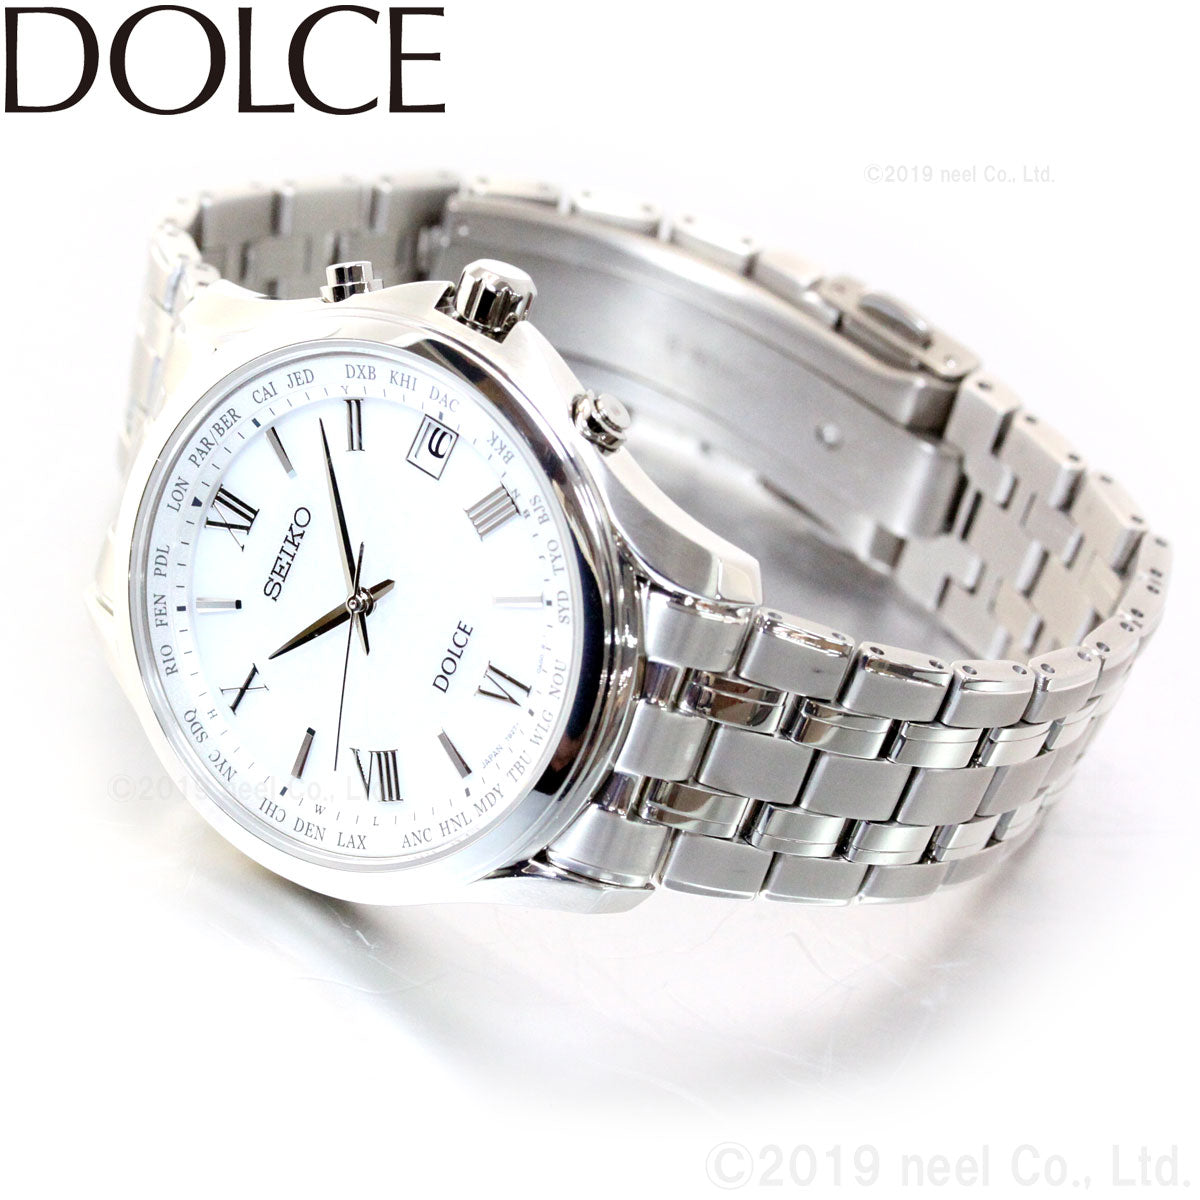 セイコー ドルチェ SEIKO DOLCE 電波 ソーラー 電波時計 腕時計 メンズ ペアウォッチ SADZ201